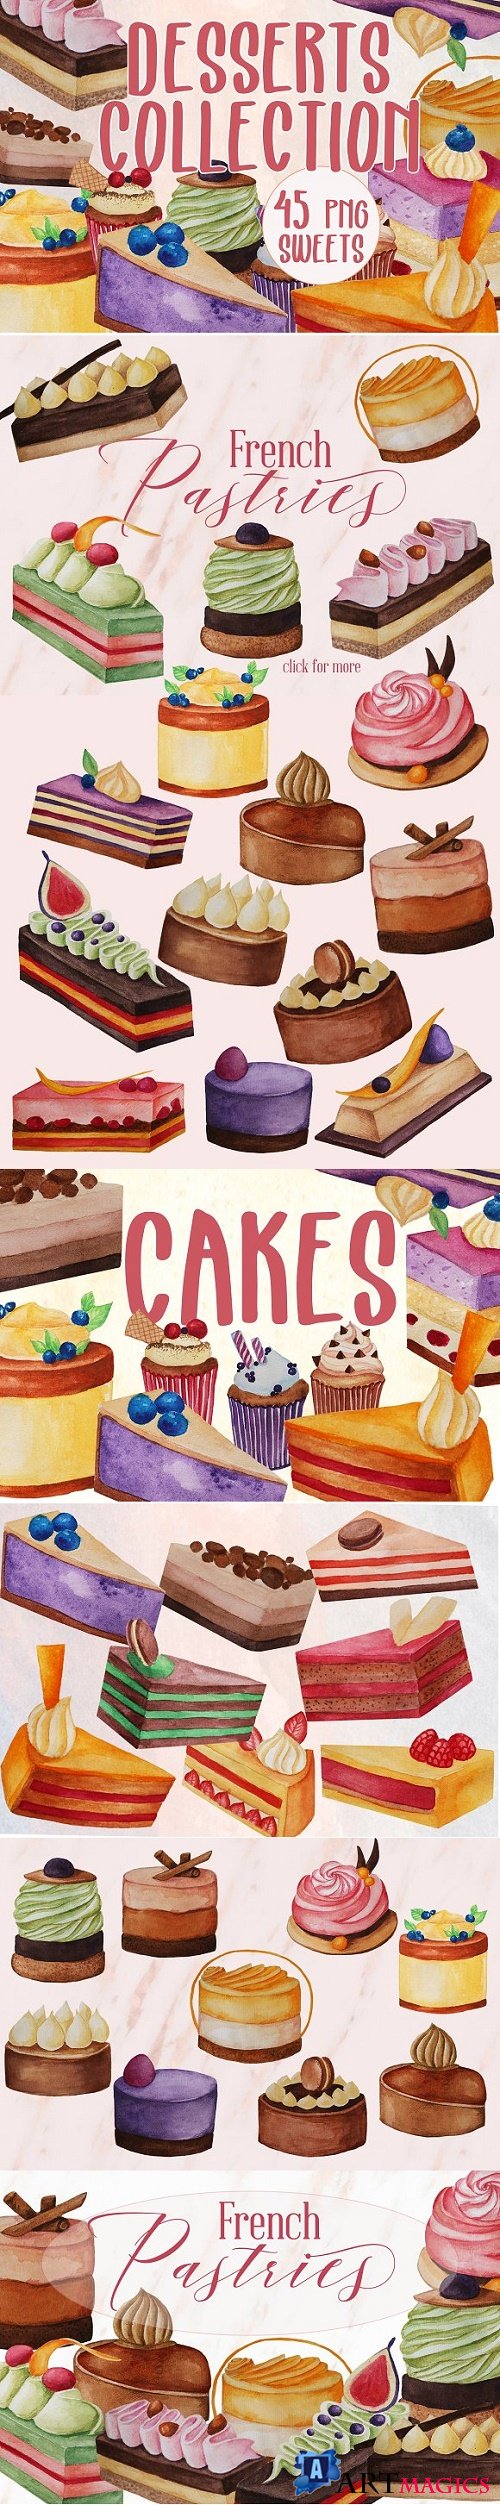 Desserts collection - Watercolor des - 2354135